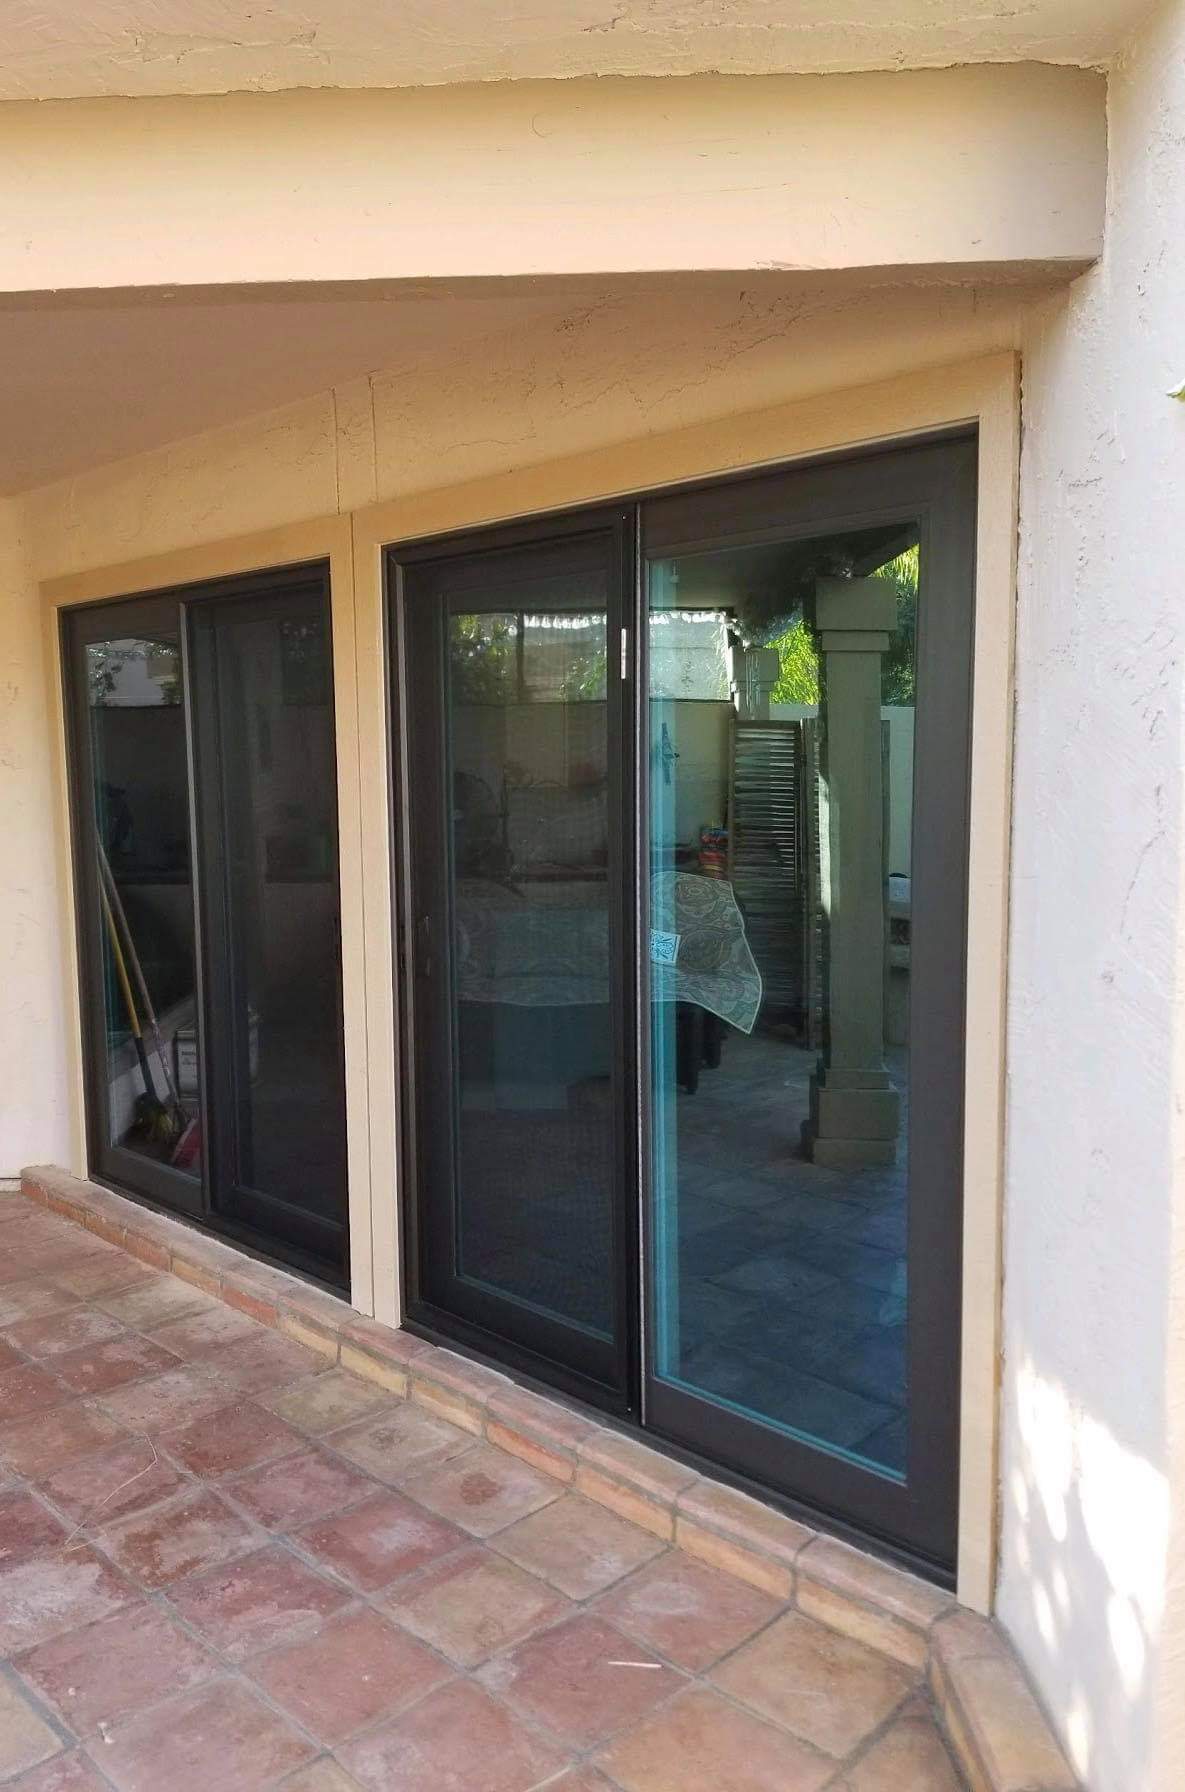 Arizona Window and Door in Scottsdale and Tucson showing sliding multipanel door